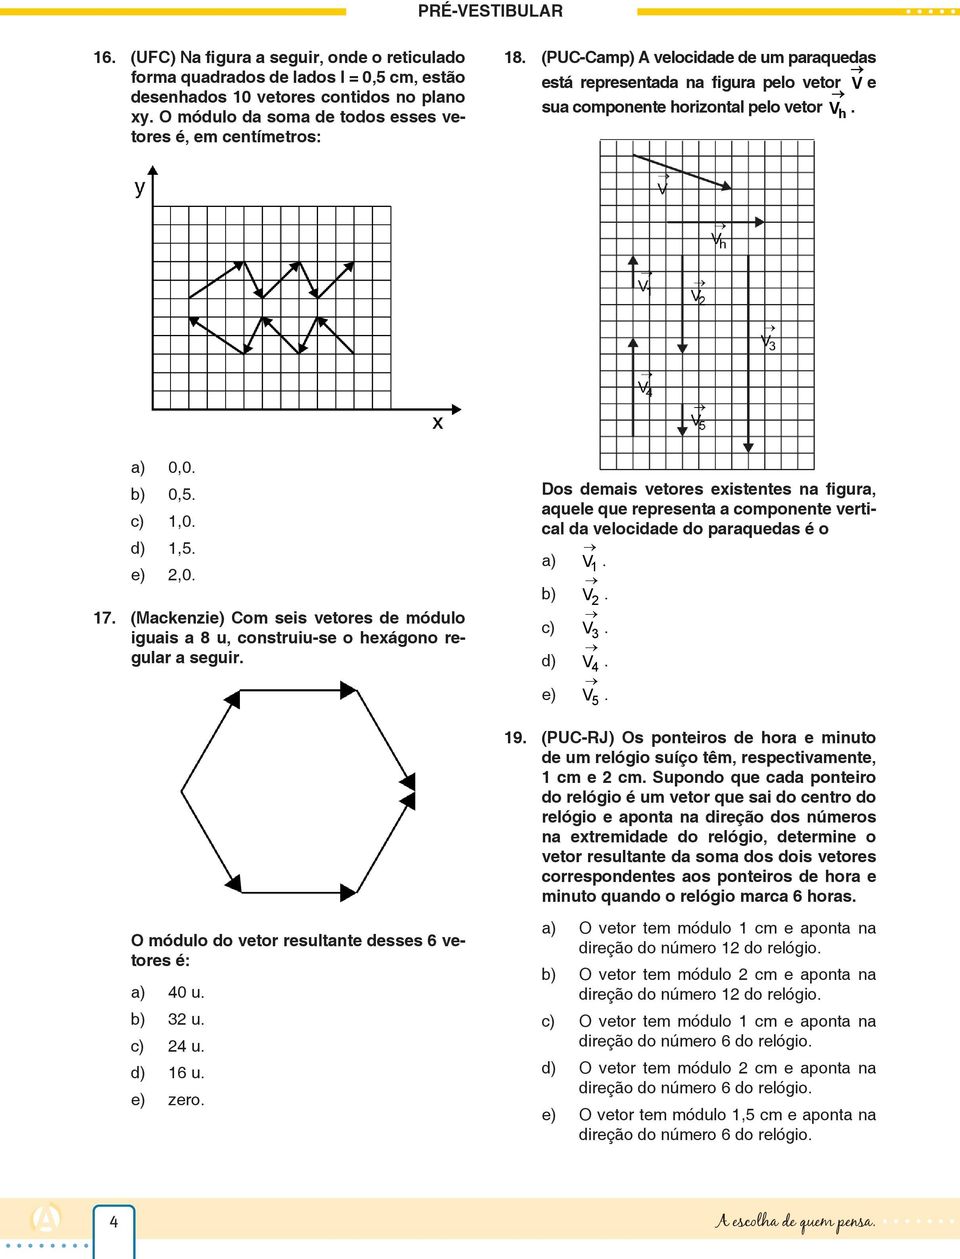 (Mackenzie) Com seis vetores de módulo iguais a 8 u, construiu-se o hexágono regular a seguir.